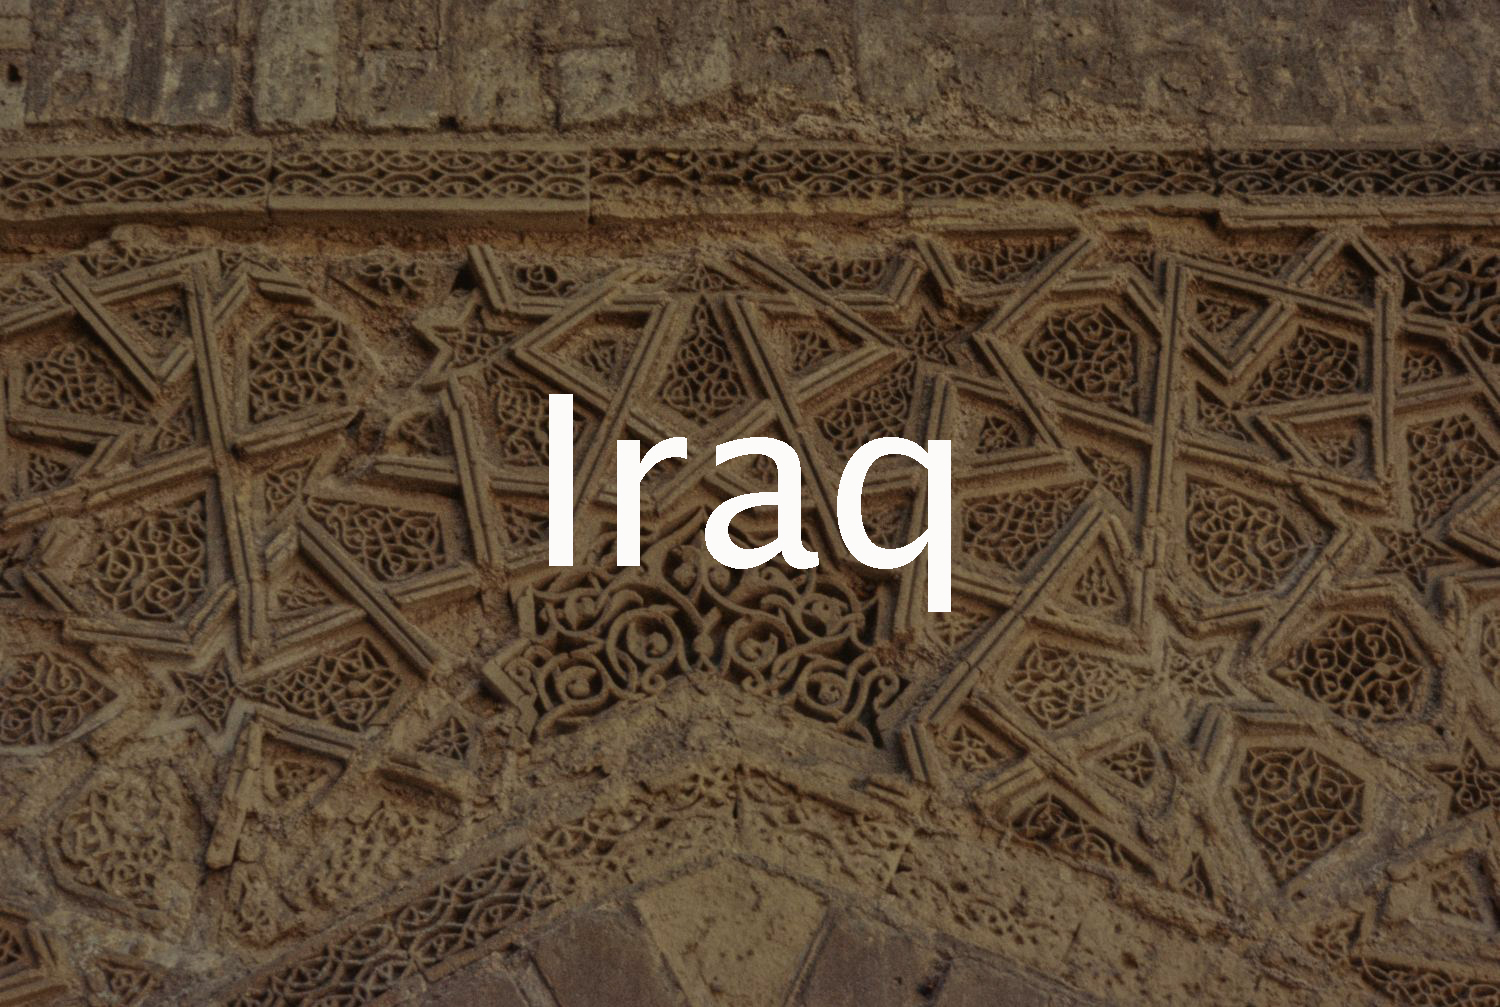 Iraq (Jenkins-Madina Archive)